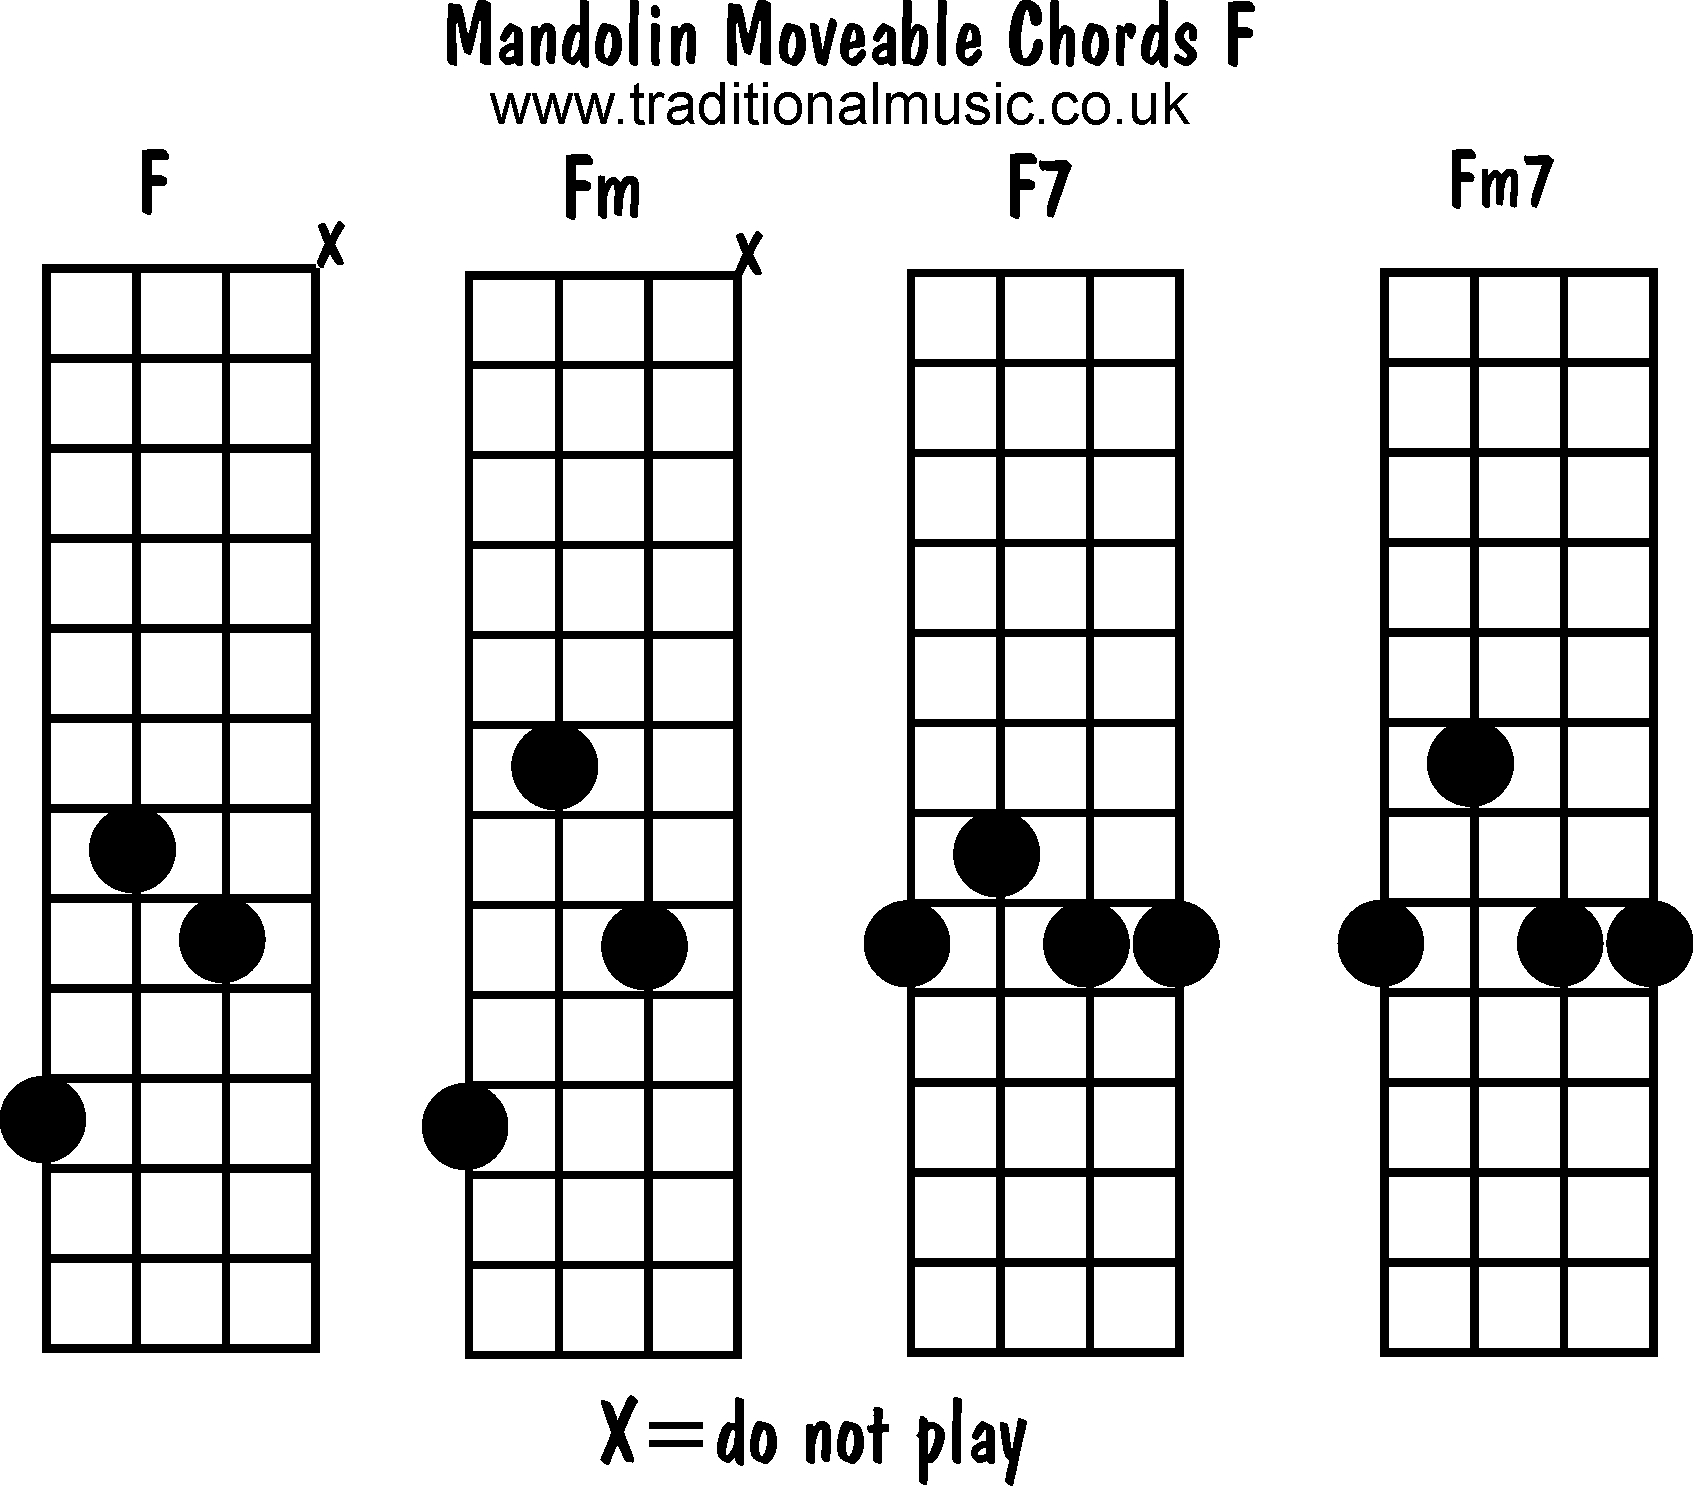 F M Chord Mandolin Chords Moveable F Fm F7 Fm7